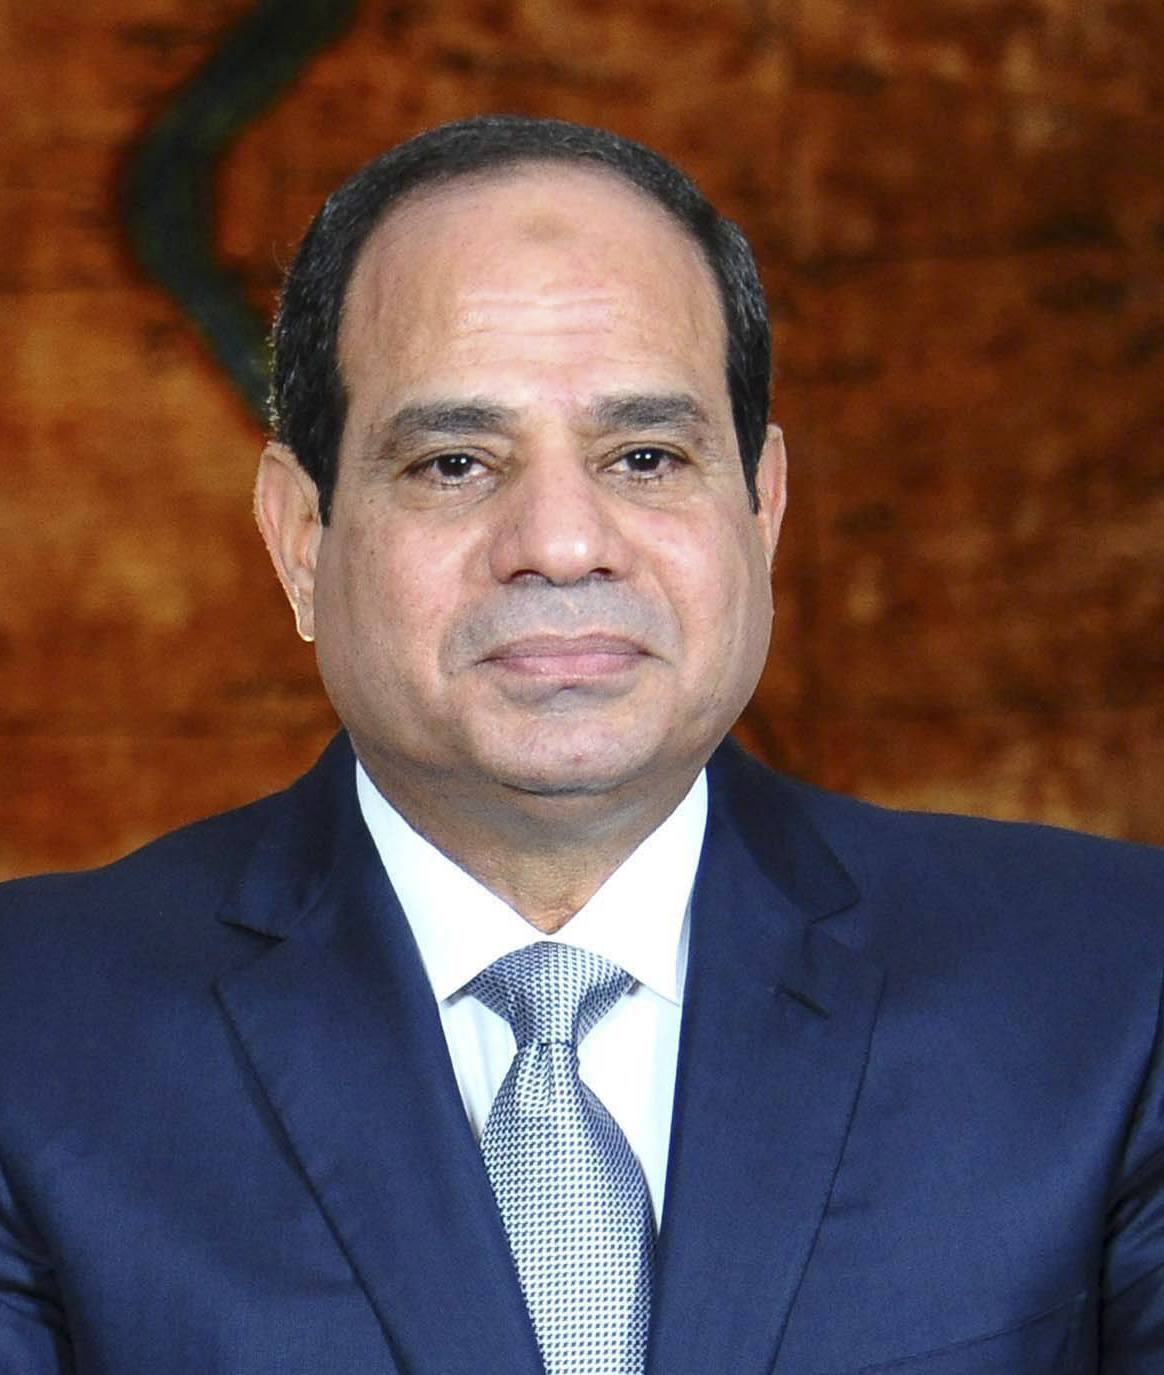 Egypt's President Abdelfatah Al-Sisi